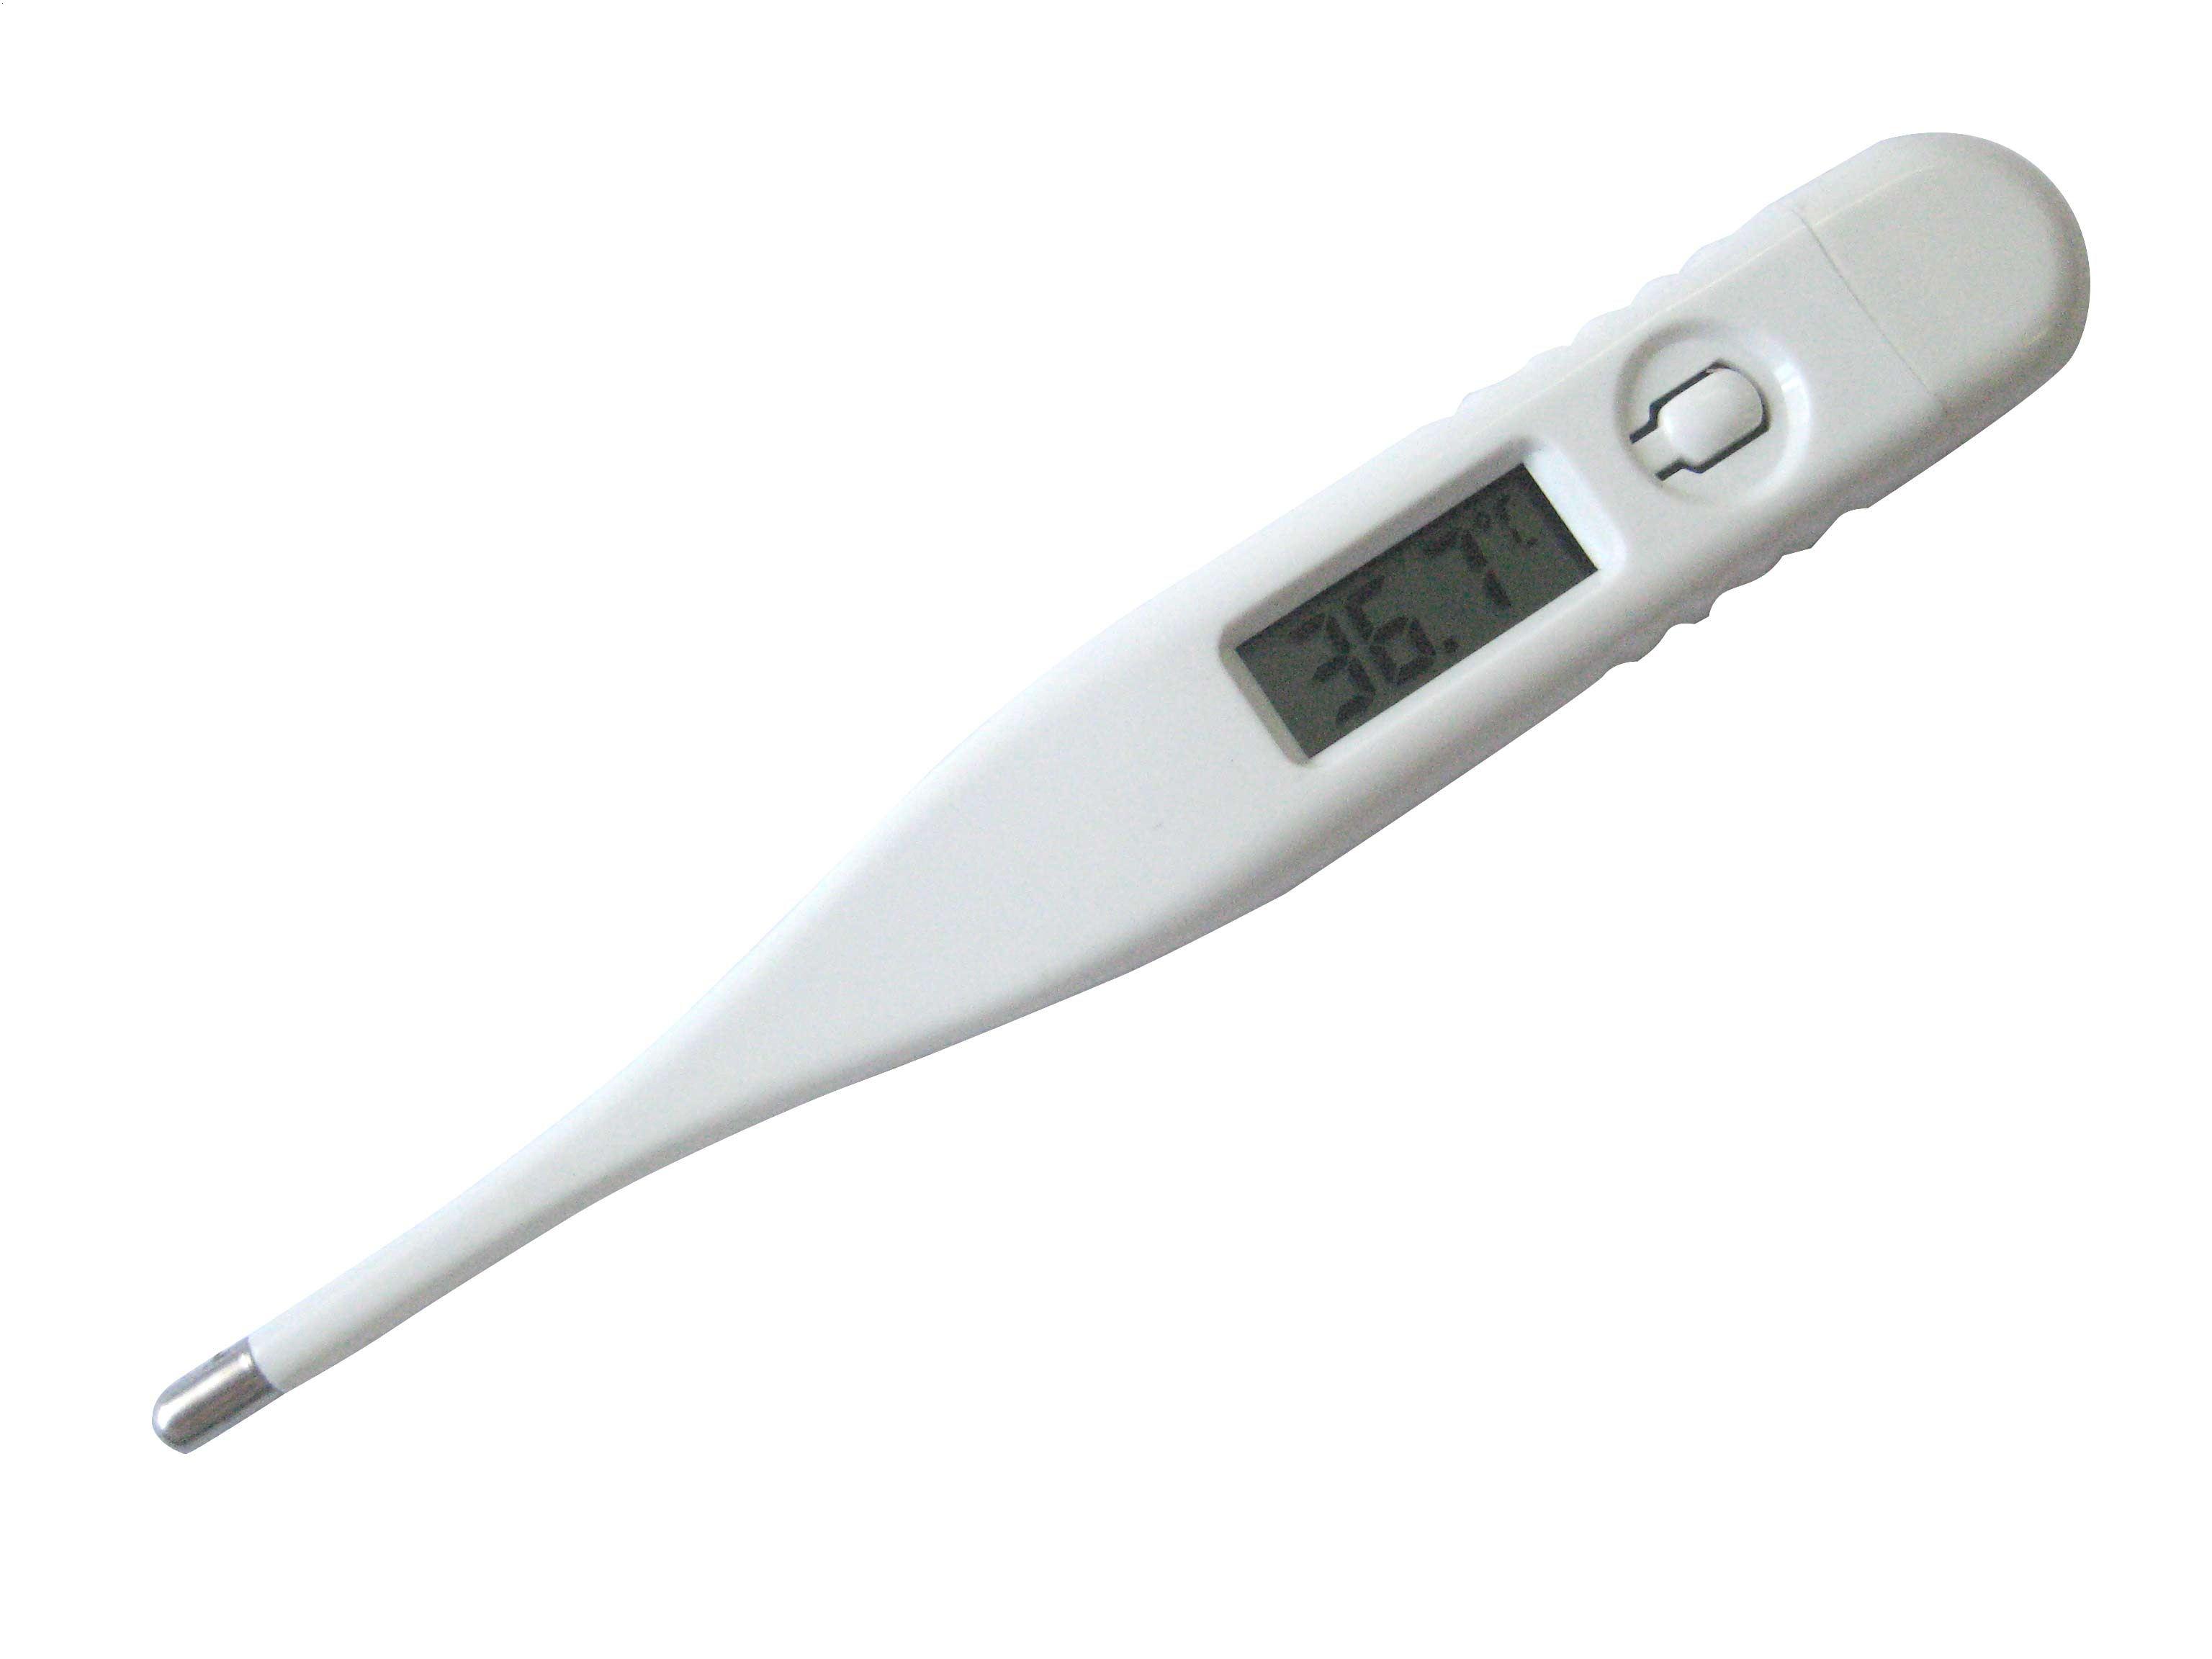 多温度测量方式，秒秒测医用电子体温计给你不一样的测温体验 - 太火鸟-B2B工业设计与产品创新SaaS平台